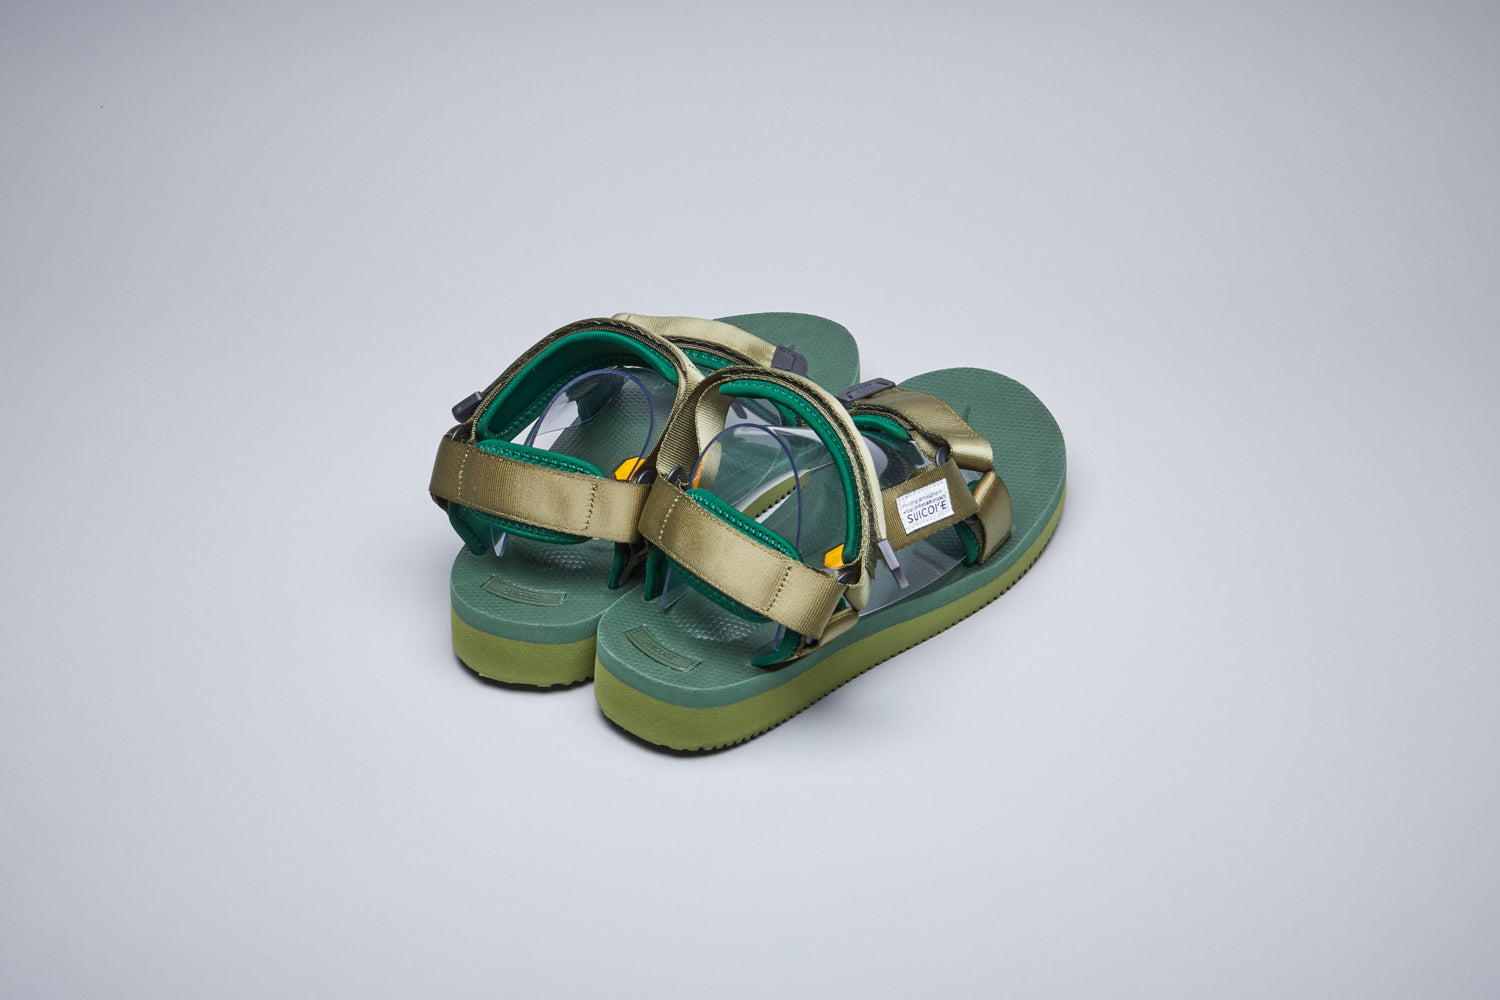 SUICOKE-Sandals-DEPA-V2 - Forest Green-OG-022V2Official Webstore Spring 2021